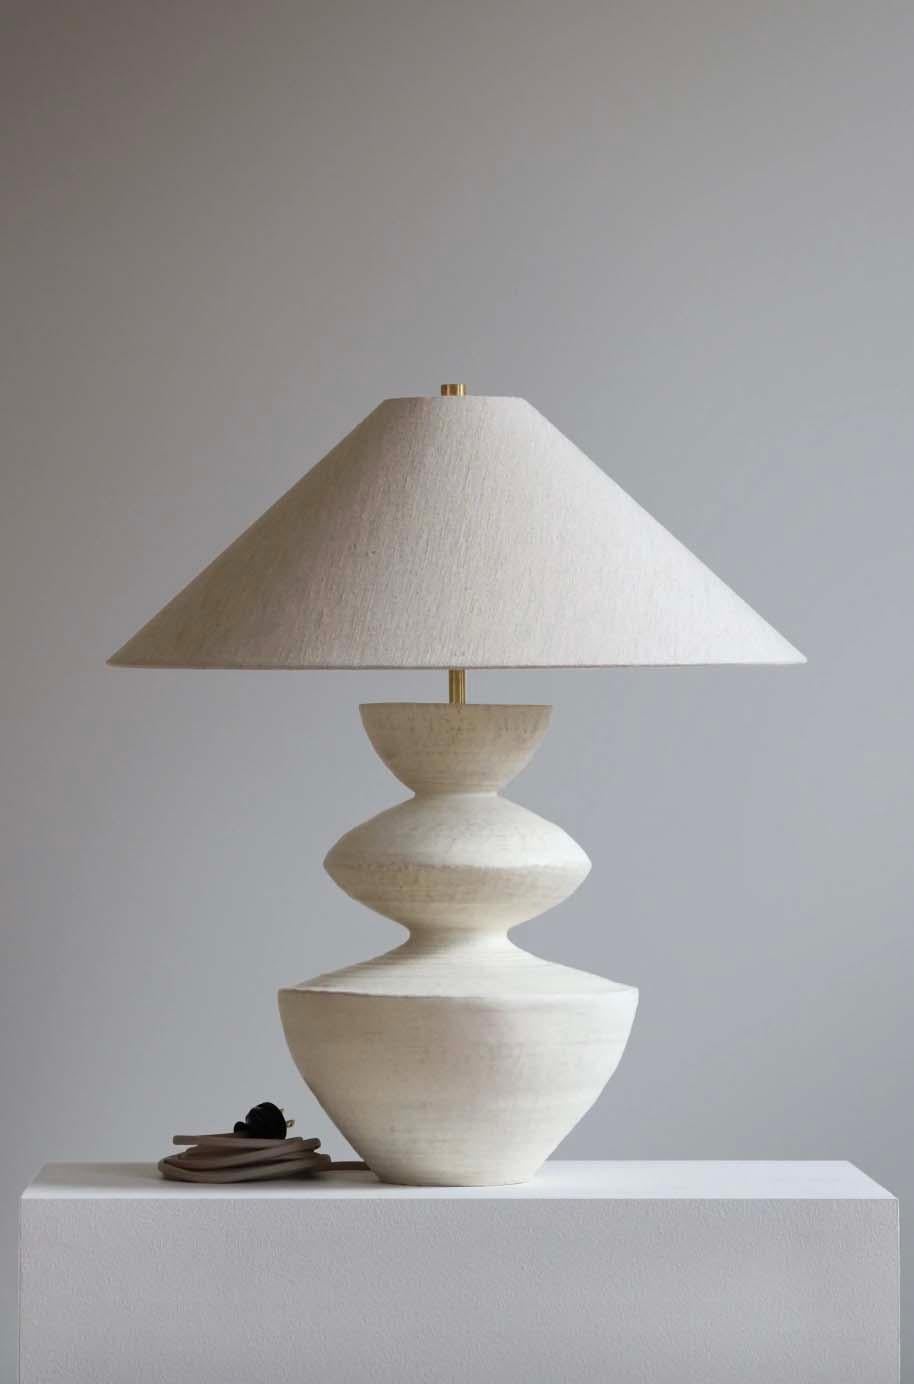 La lampe Janus est une poterie de studio faite à la main par l'artiste céramiste Danny Kaplan. Abat-jour inclus. Veuillez noter que les dimensions exactes peuvent varier.

Né à New York et élevé à Aix-en-Provence, en France, la passion de Danny